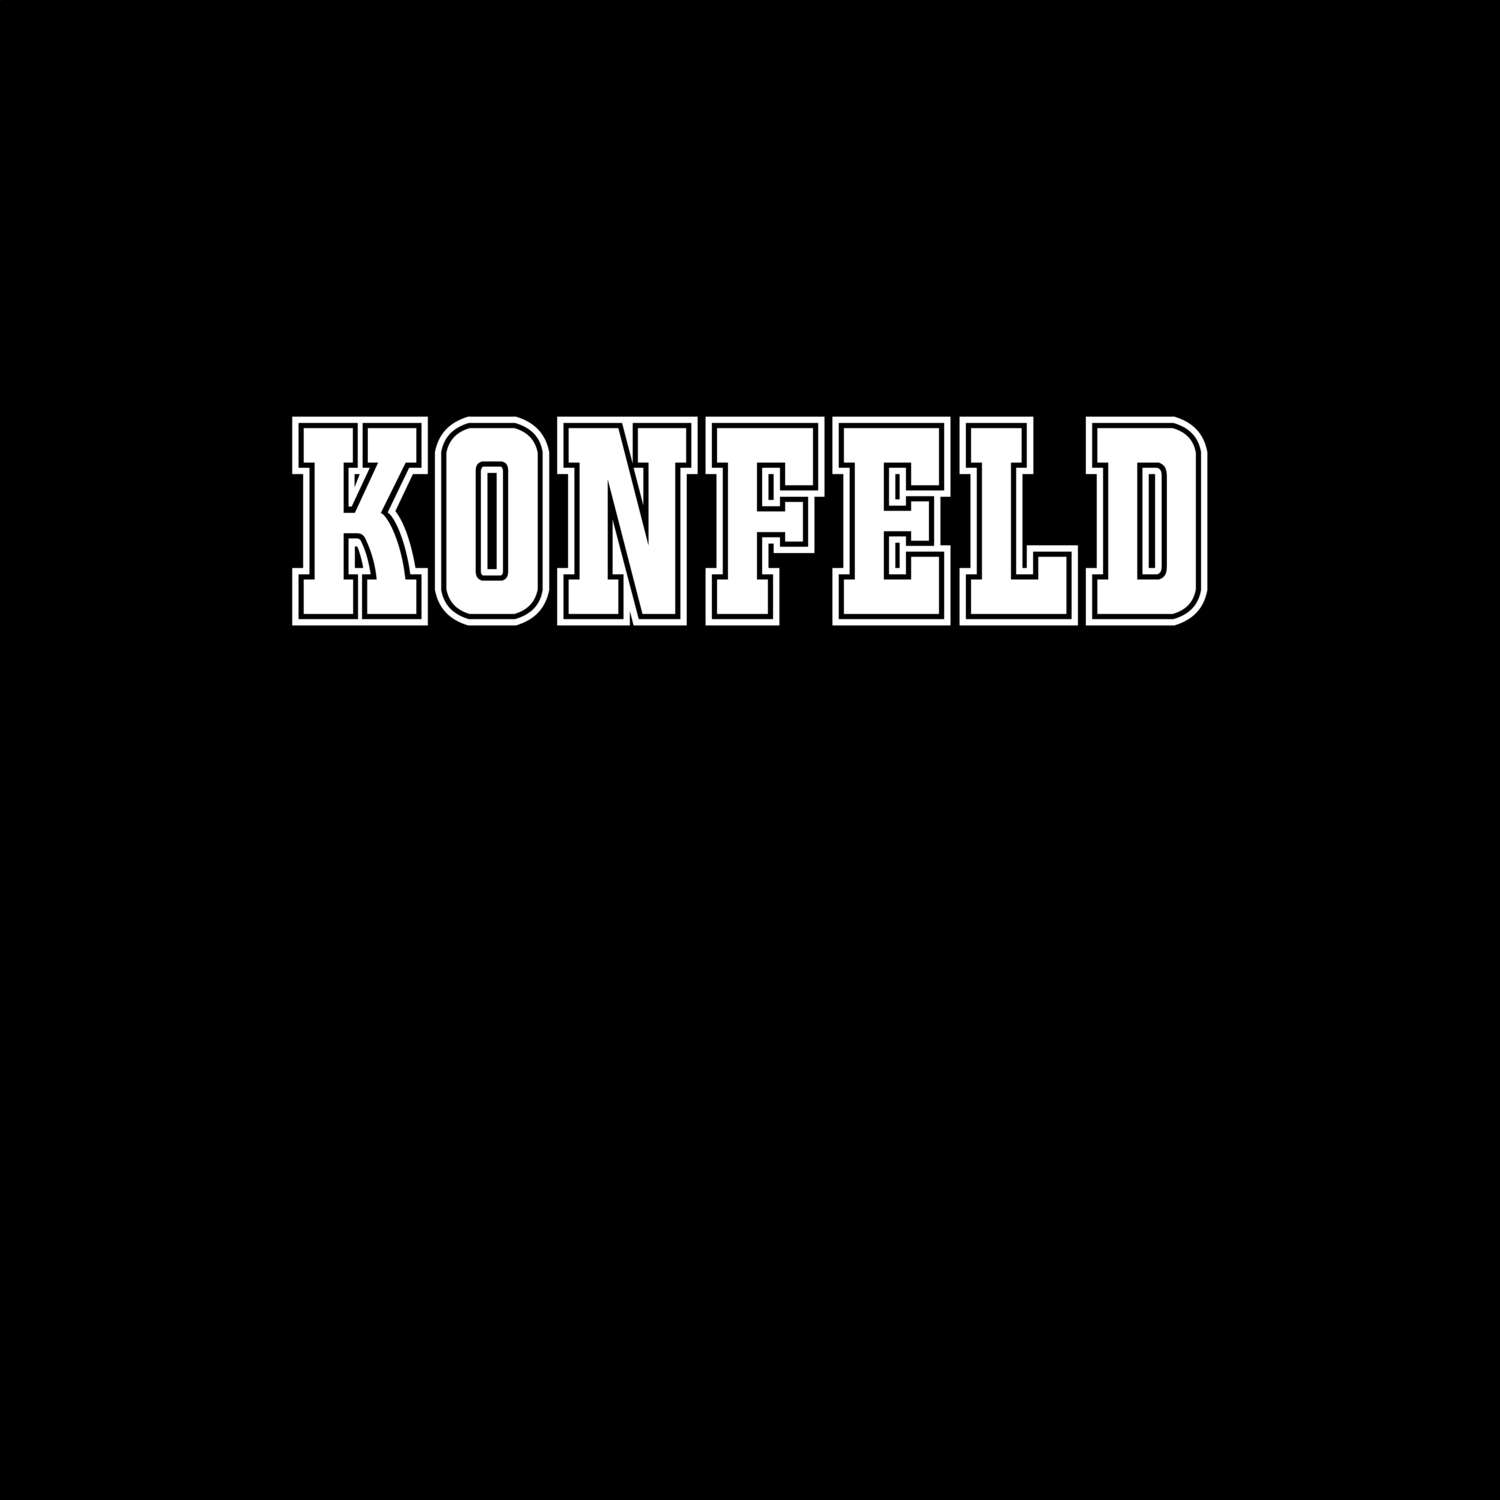 Konfeld T-Shirt »Classic«